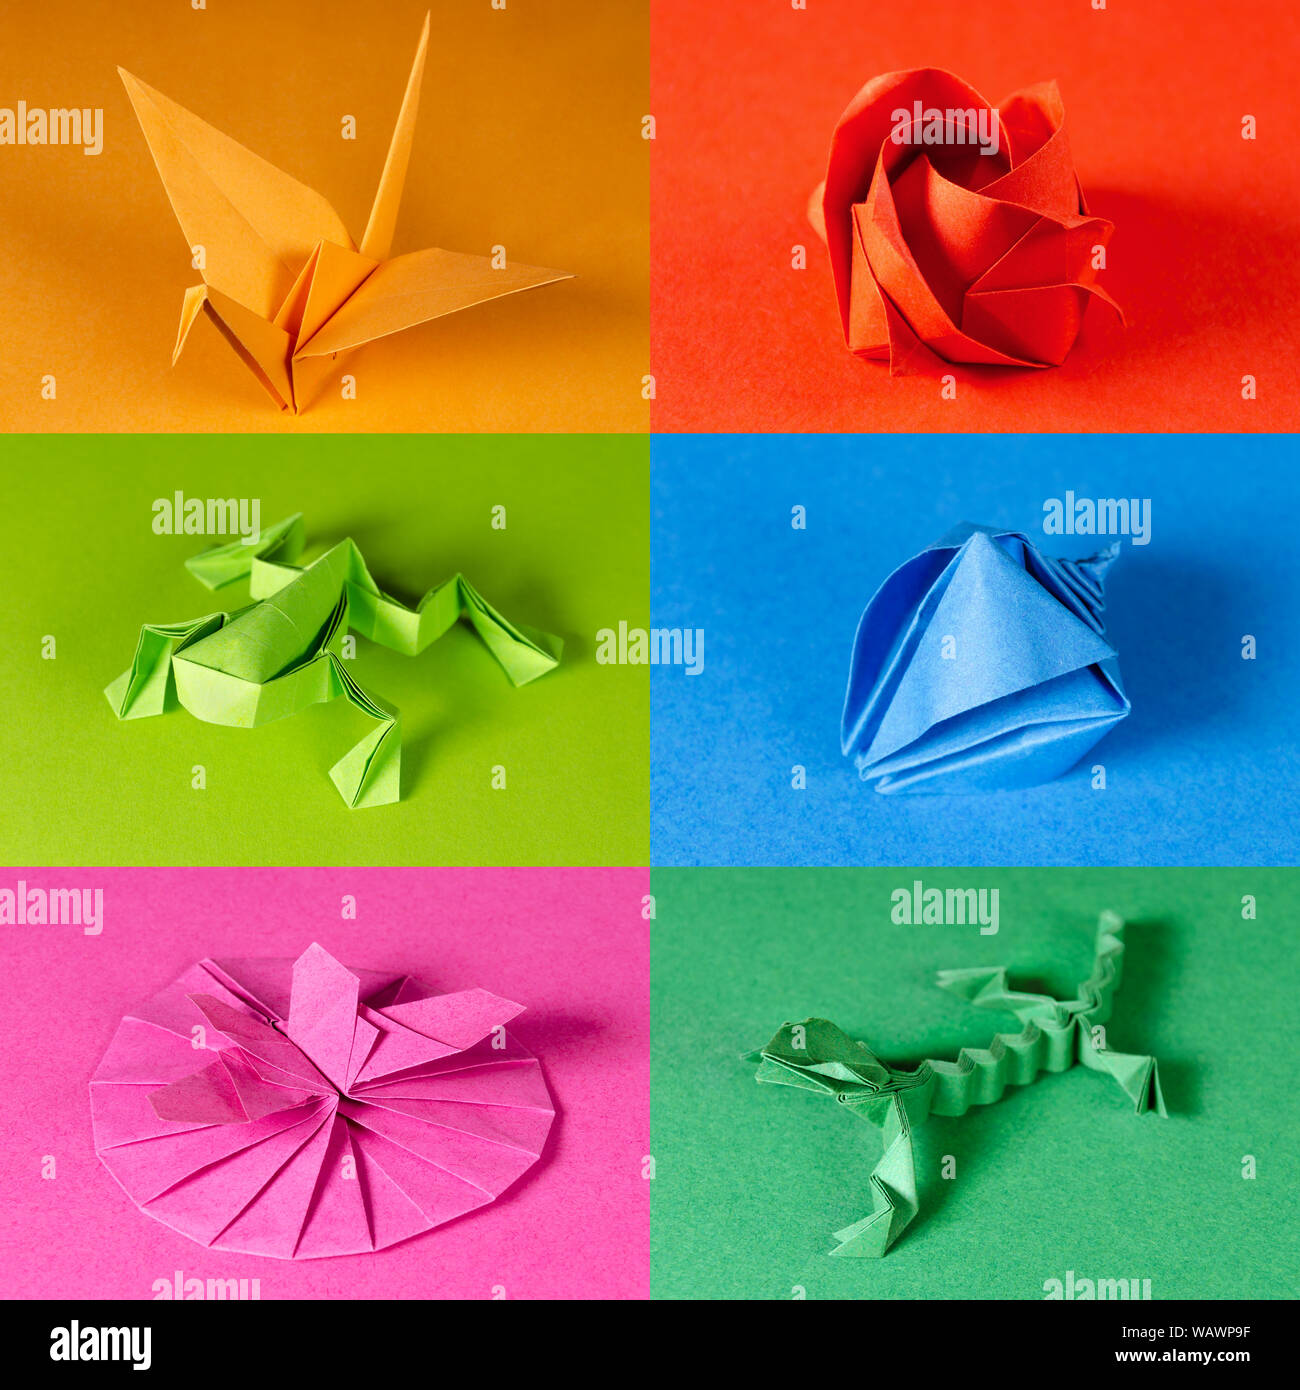 Arte origami immagini e fotografie stock ad alta risoluzione - Alamy